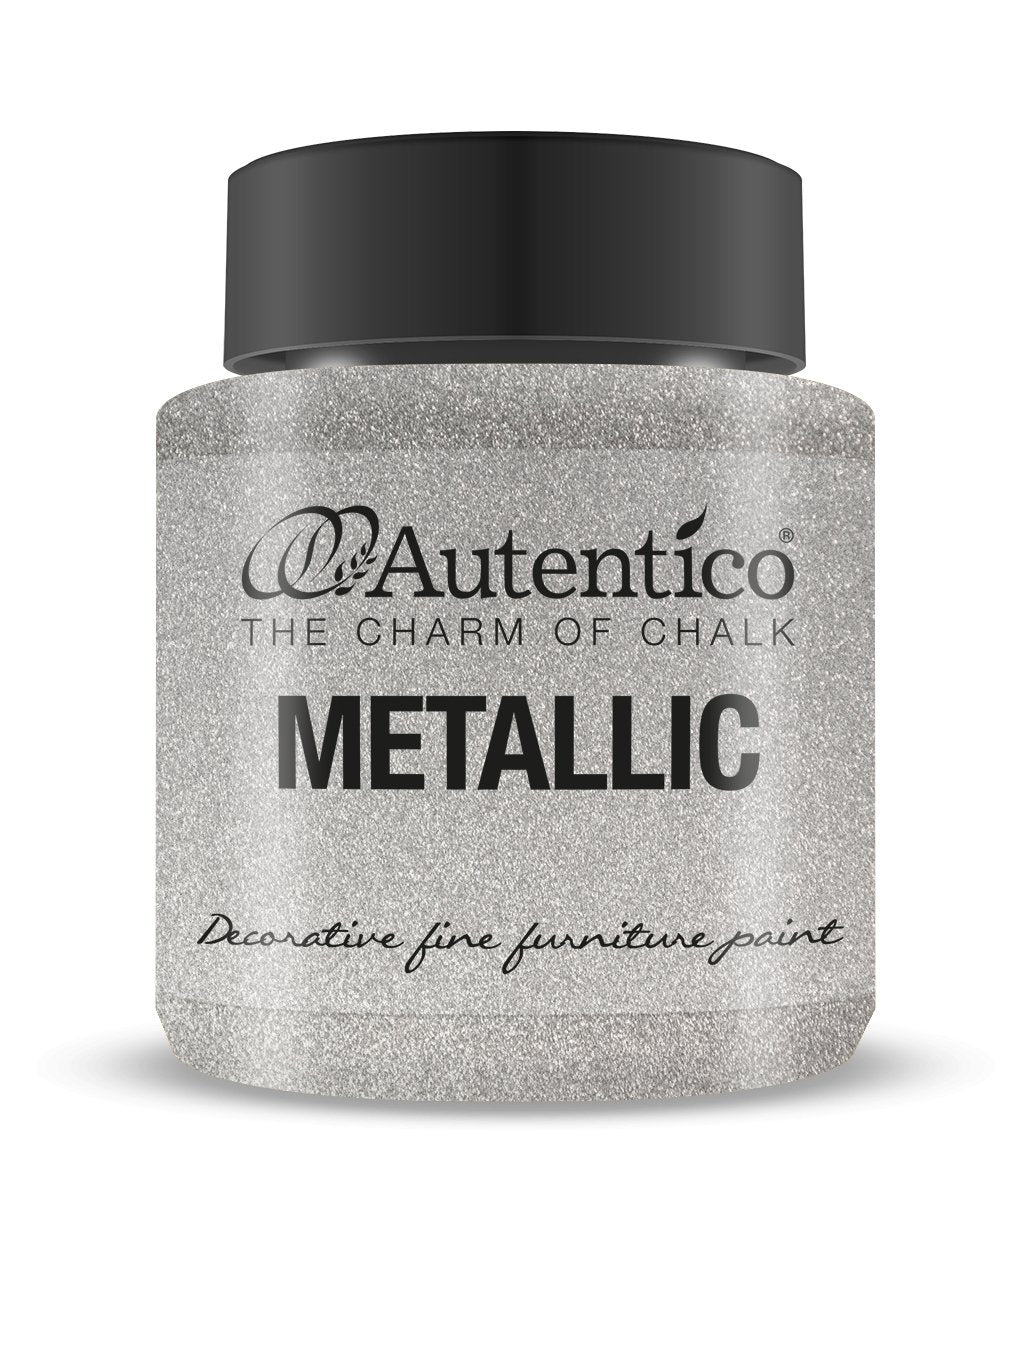 Metallico - Autentico Paint UK